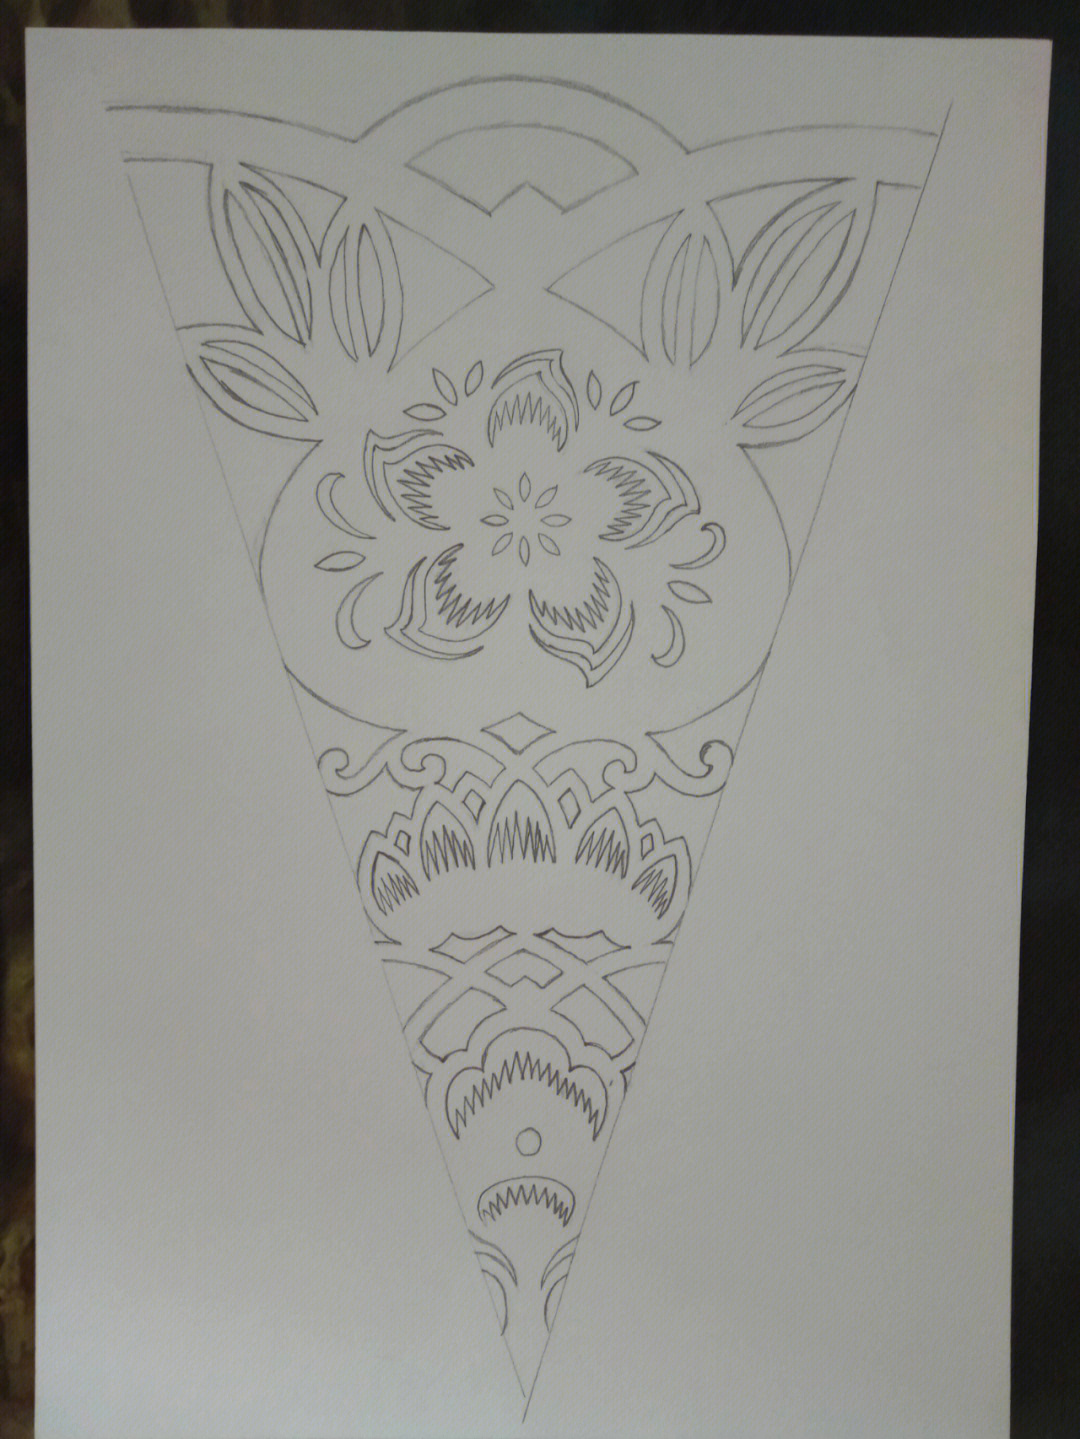 六折团花画法纹样图片